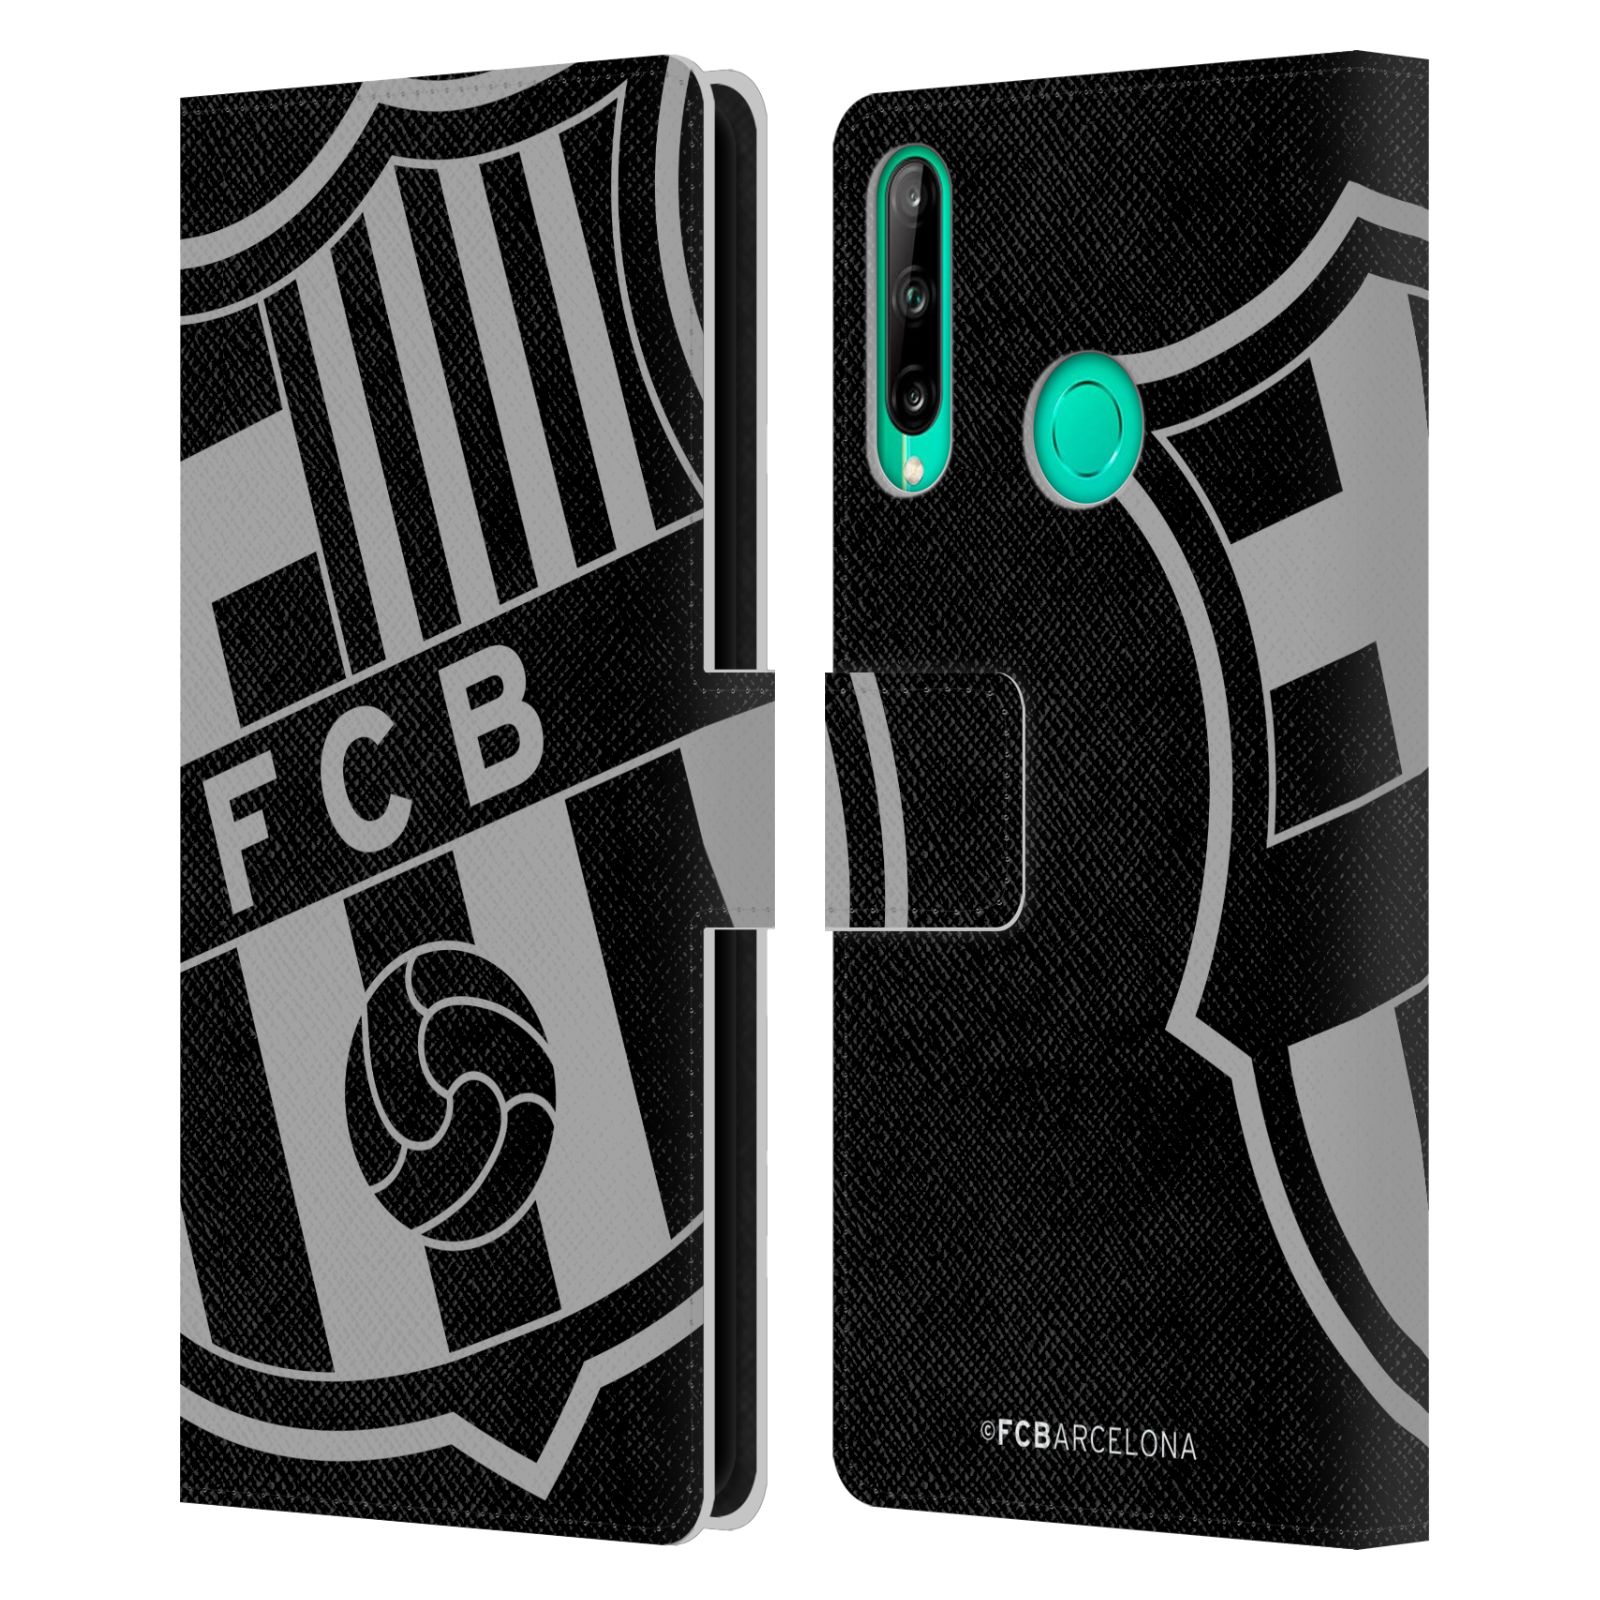 Pouzdro na mobil Huawei P40 LITE E - HEAD CASE - FC Barcelona - černošedé logo